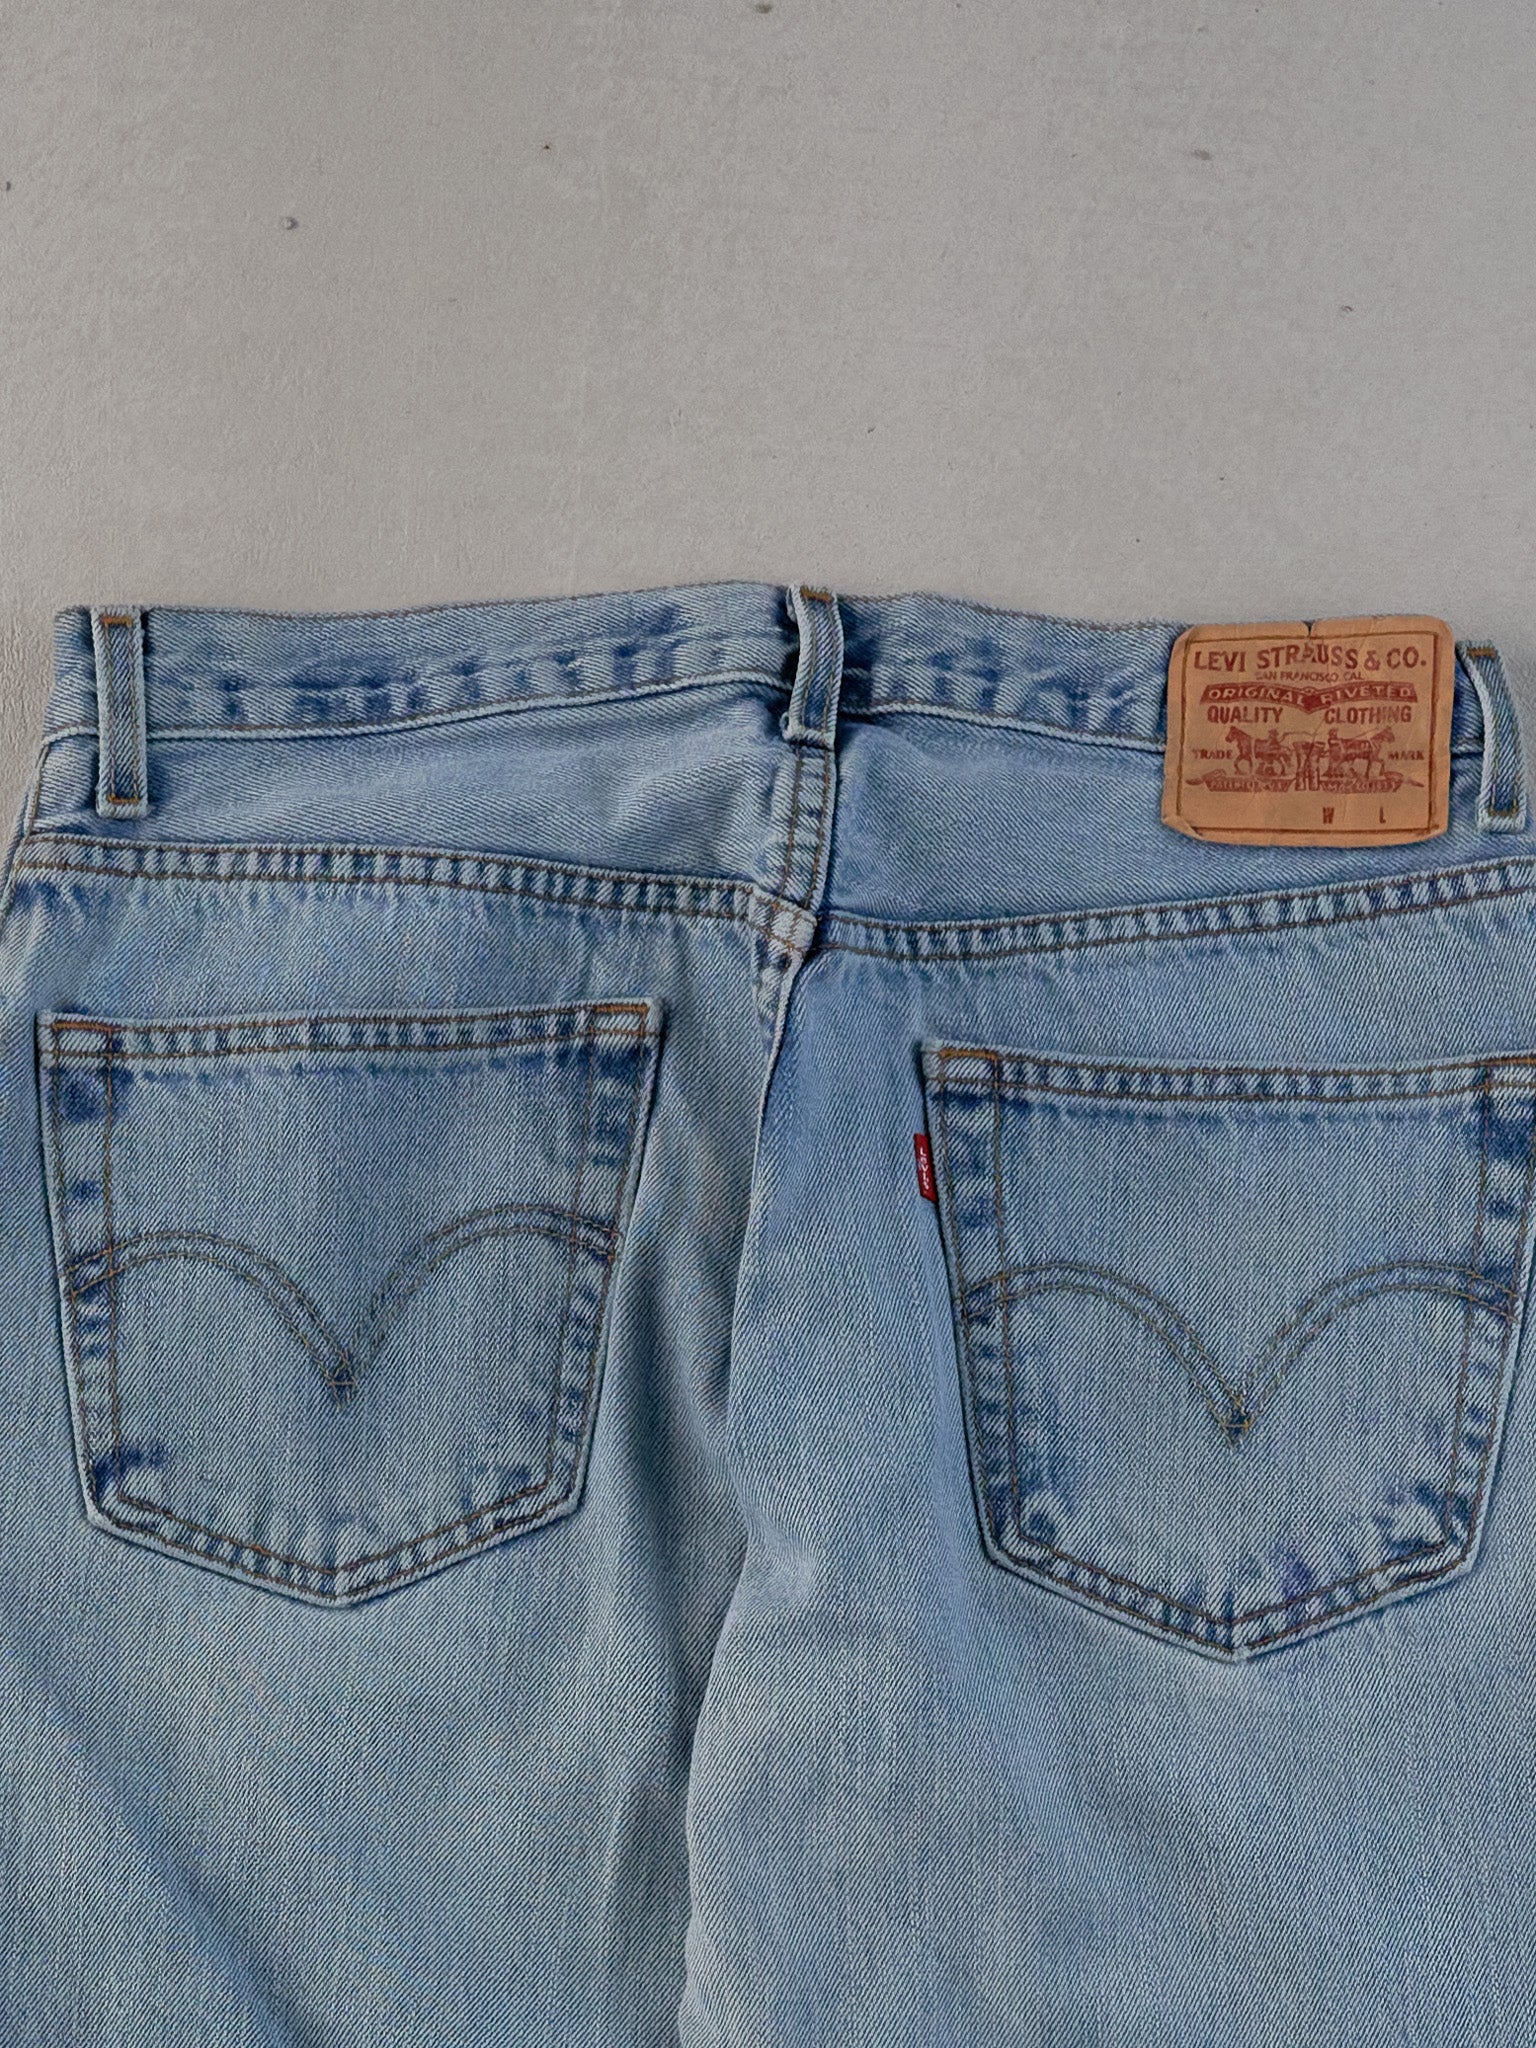 Vintage 90s Light Blue Levi's 505 Denim Jeans (30x31)